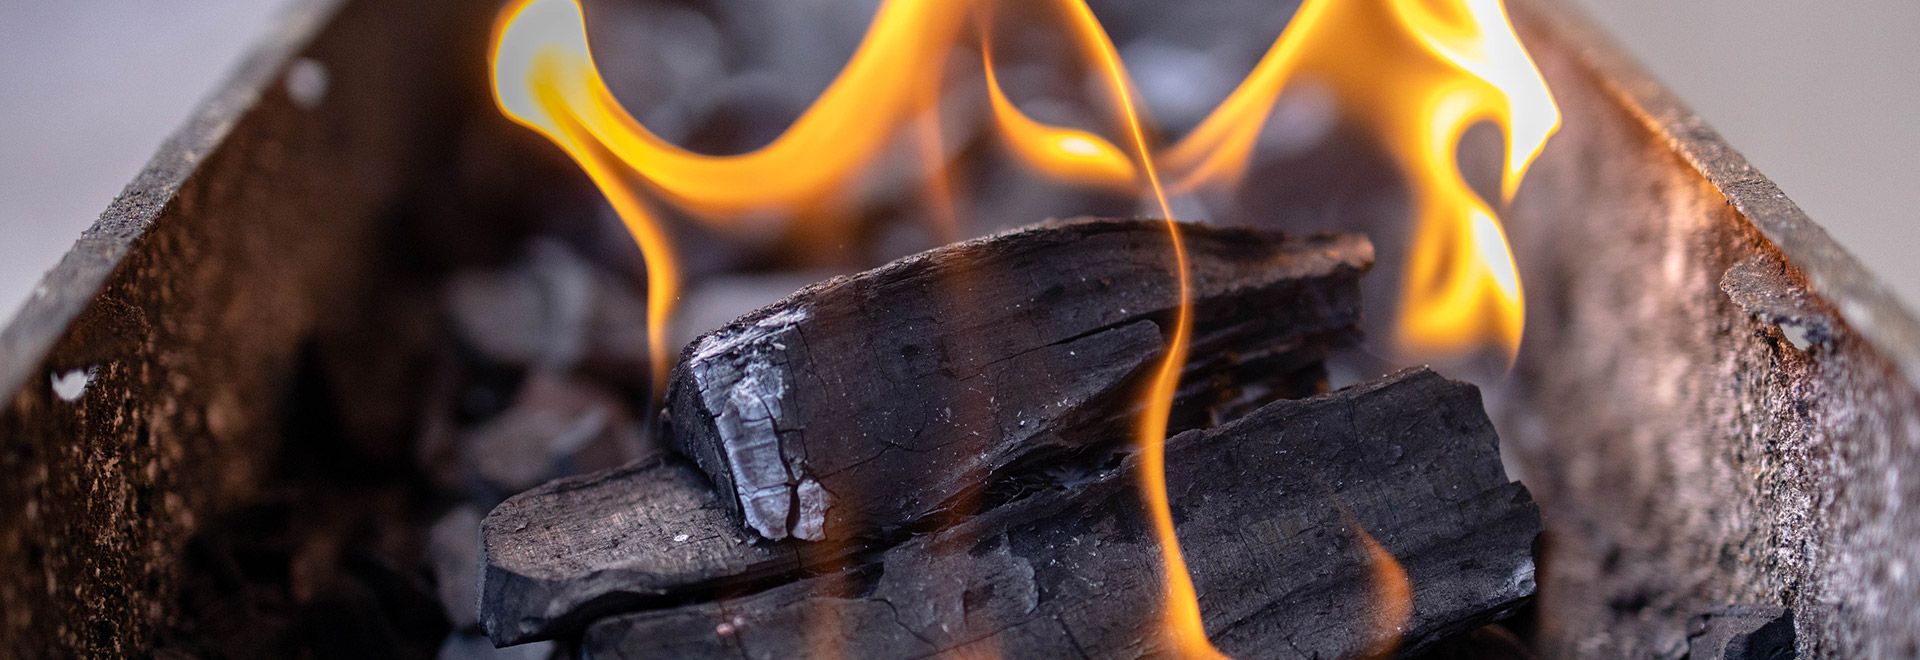 Briquettes et charbon de bois : portrait de ces combustibles